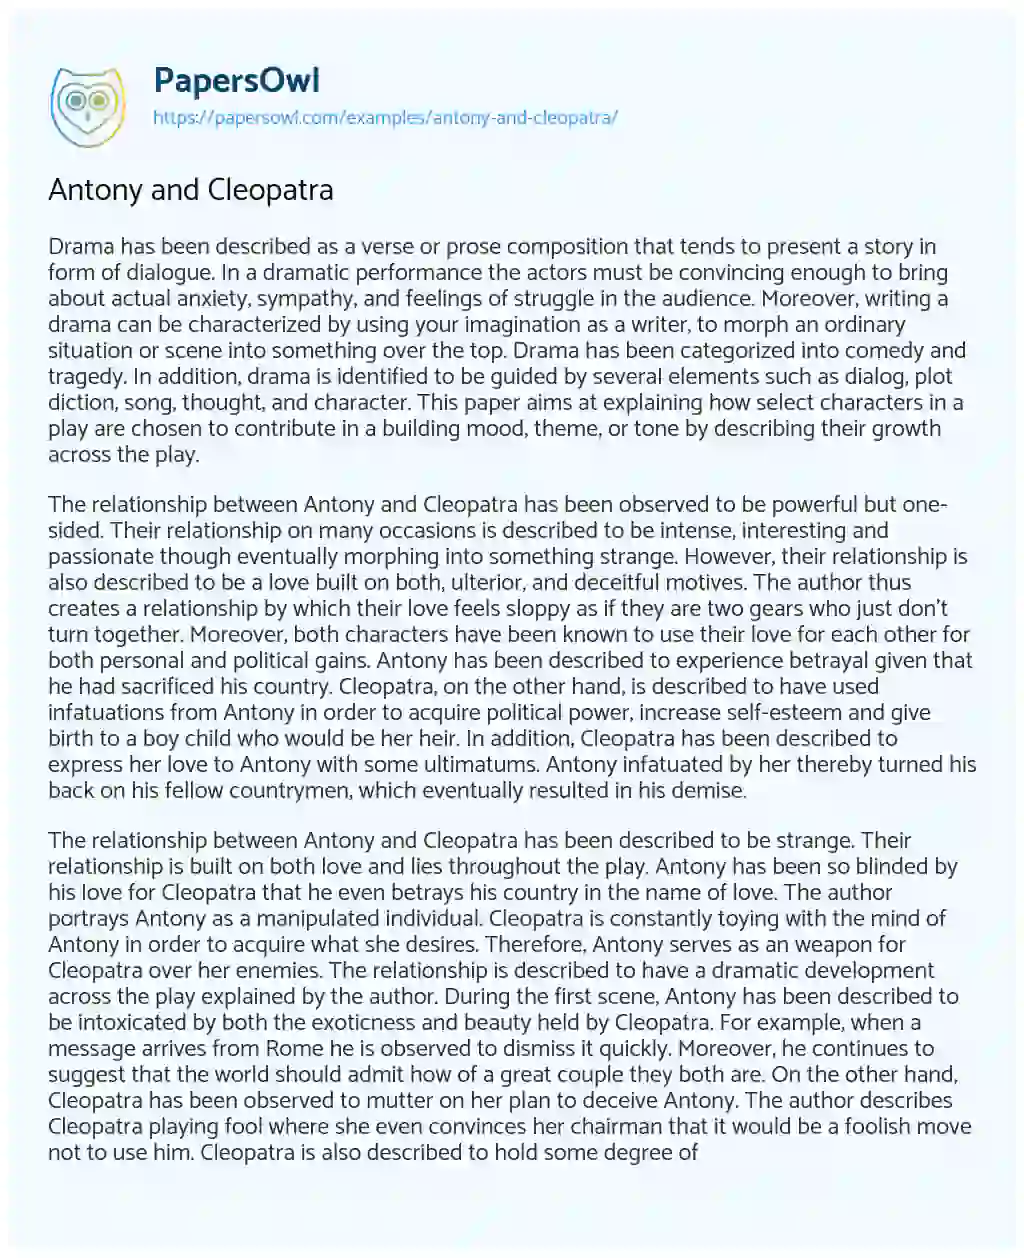 Antony and Cleopatra essay